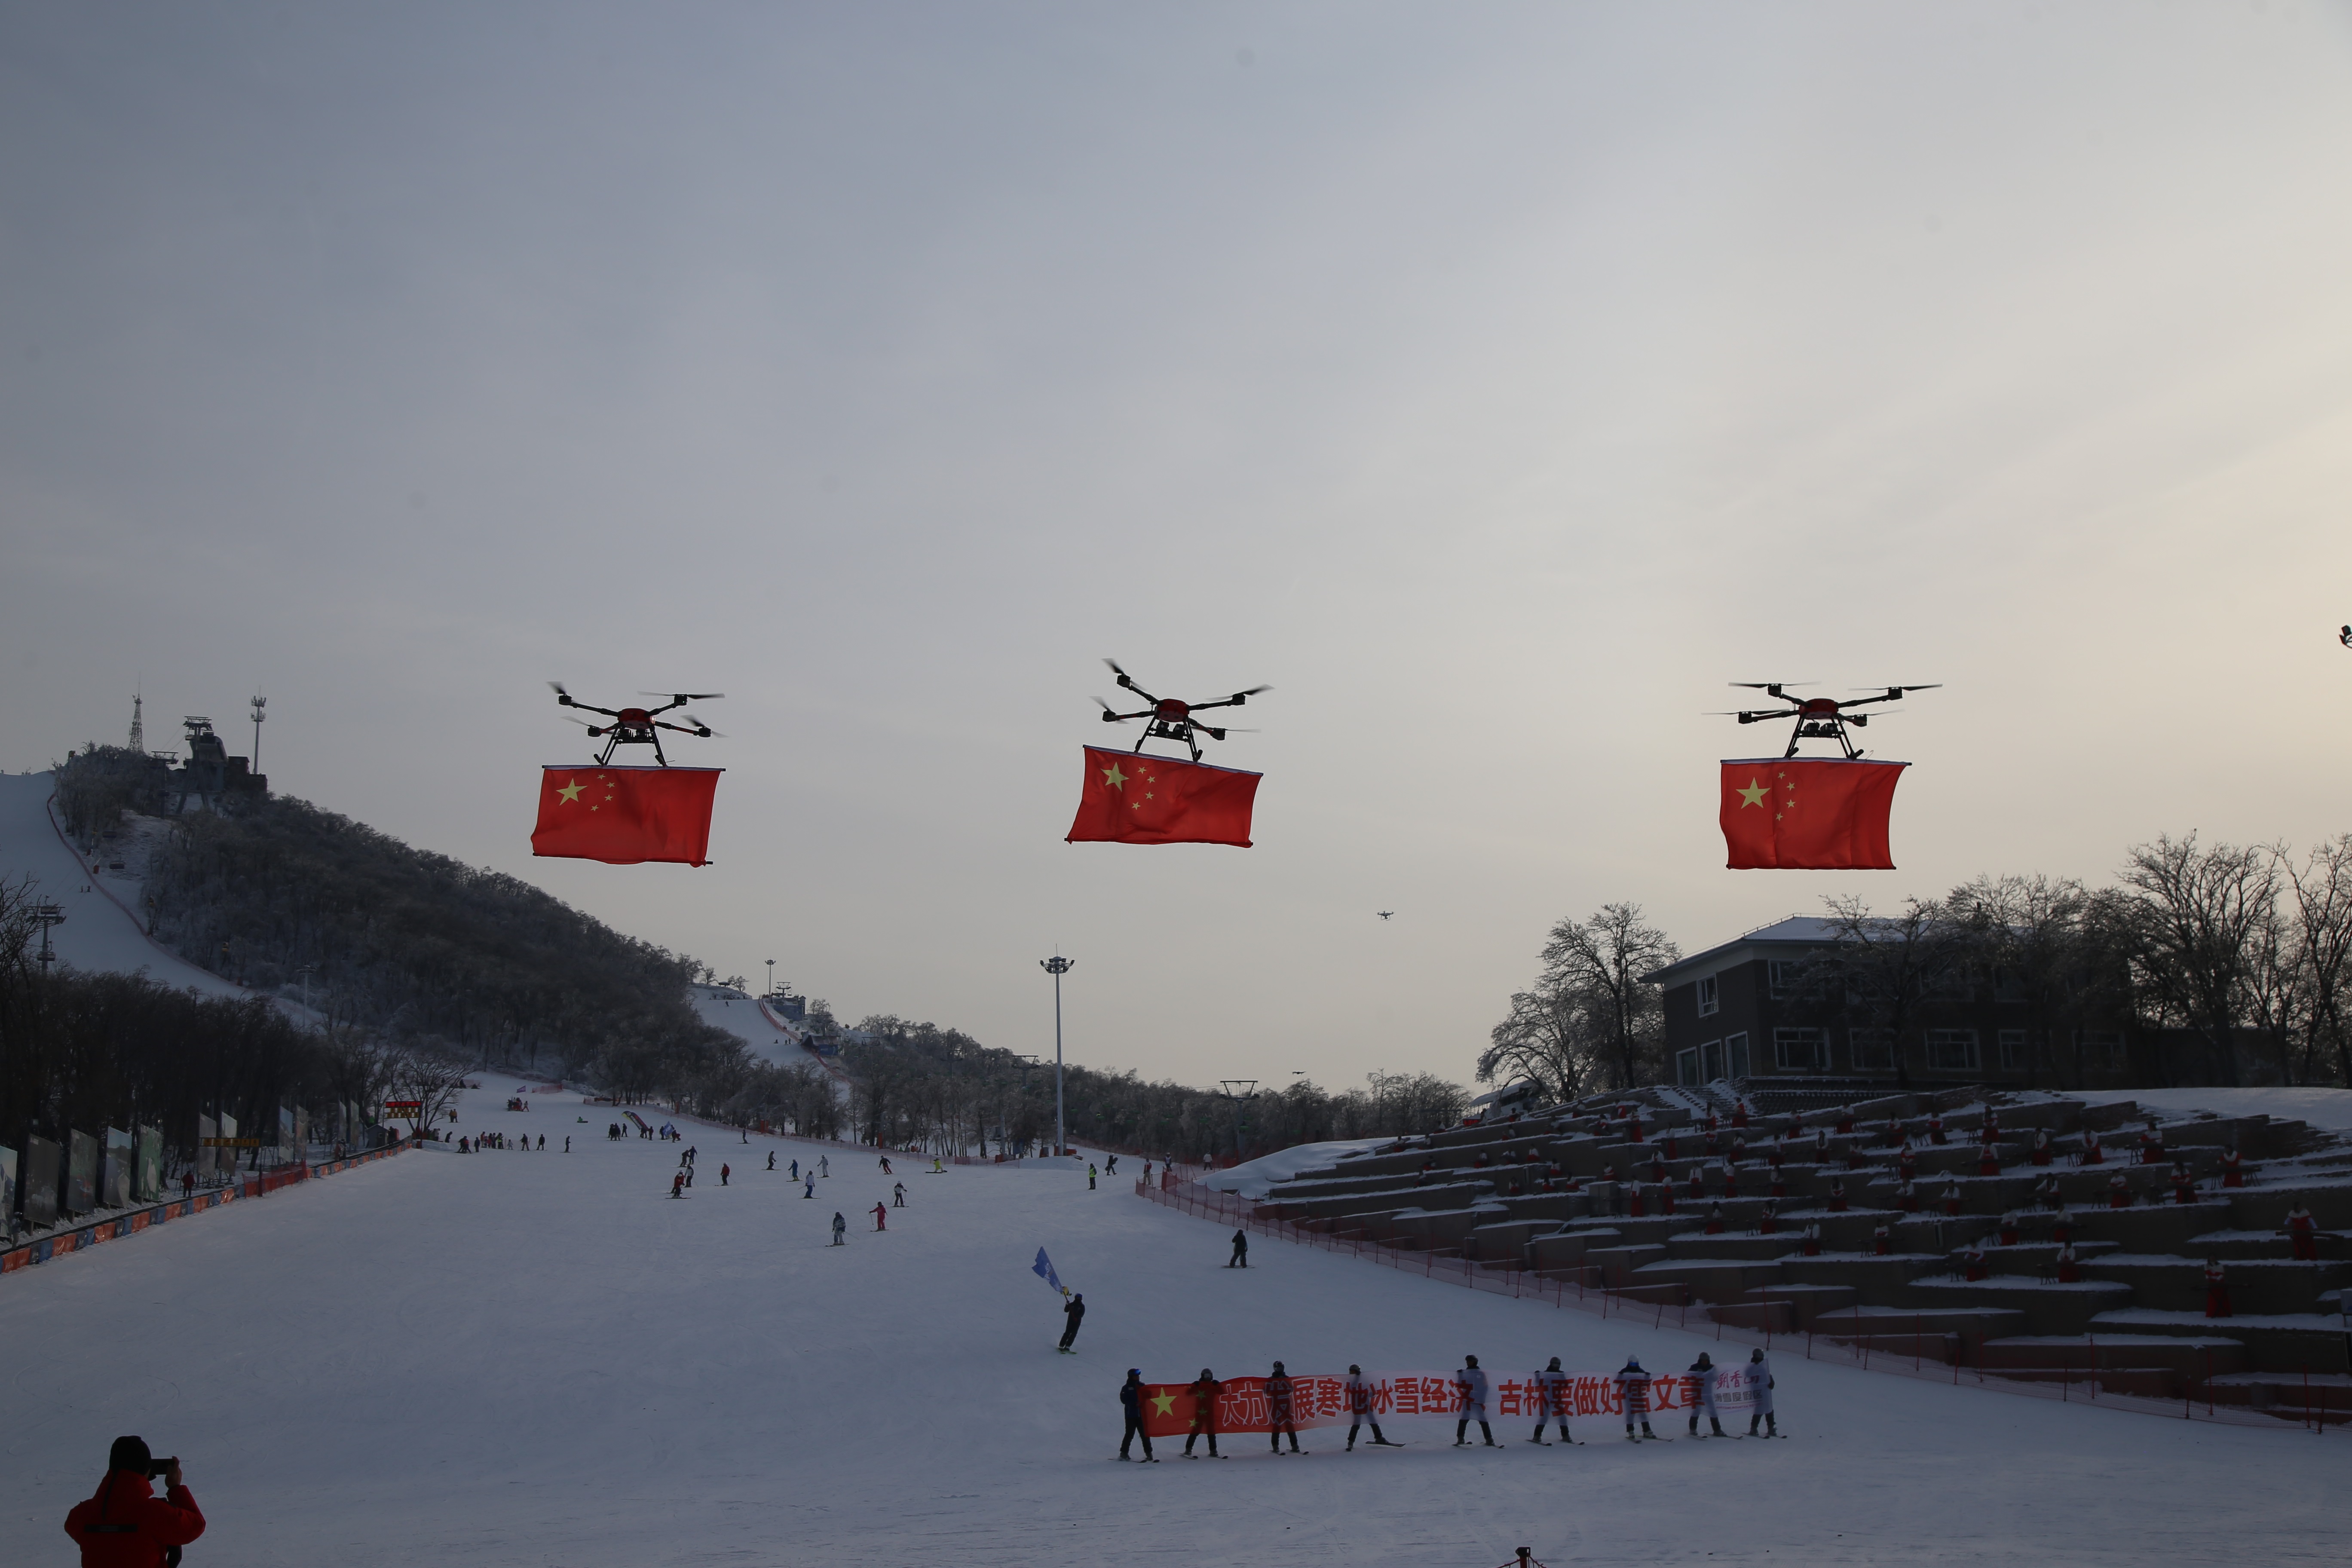 中科智航无人机助力“长春·九台冰雪文化旅游节冰雪启幕仪式”